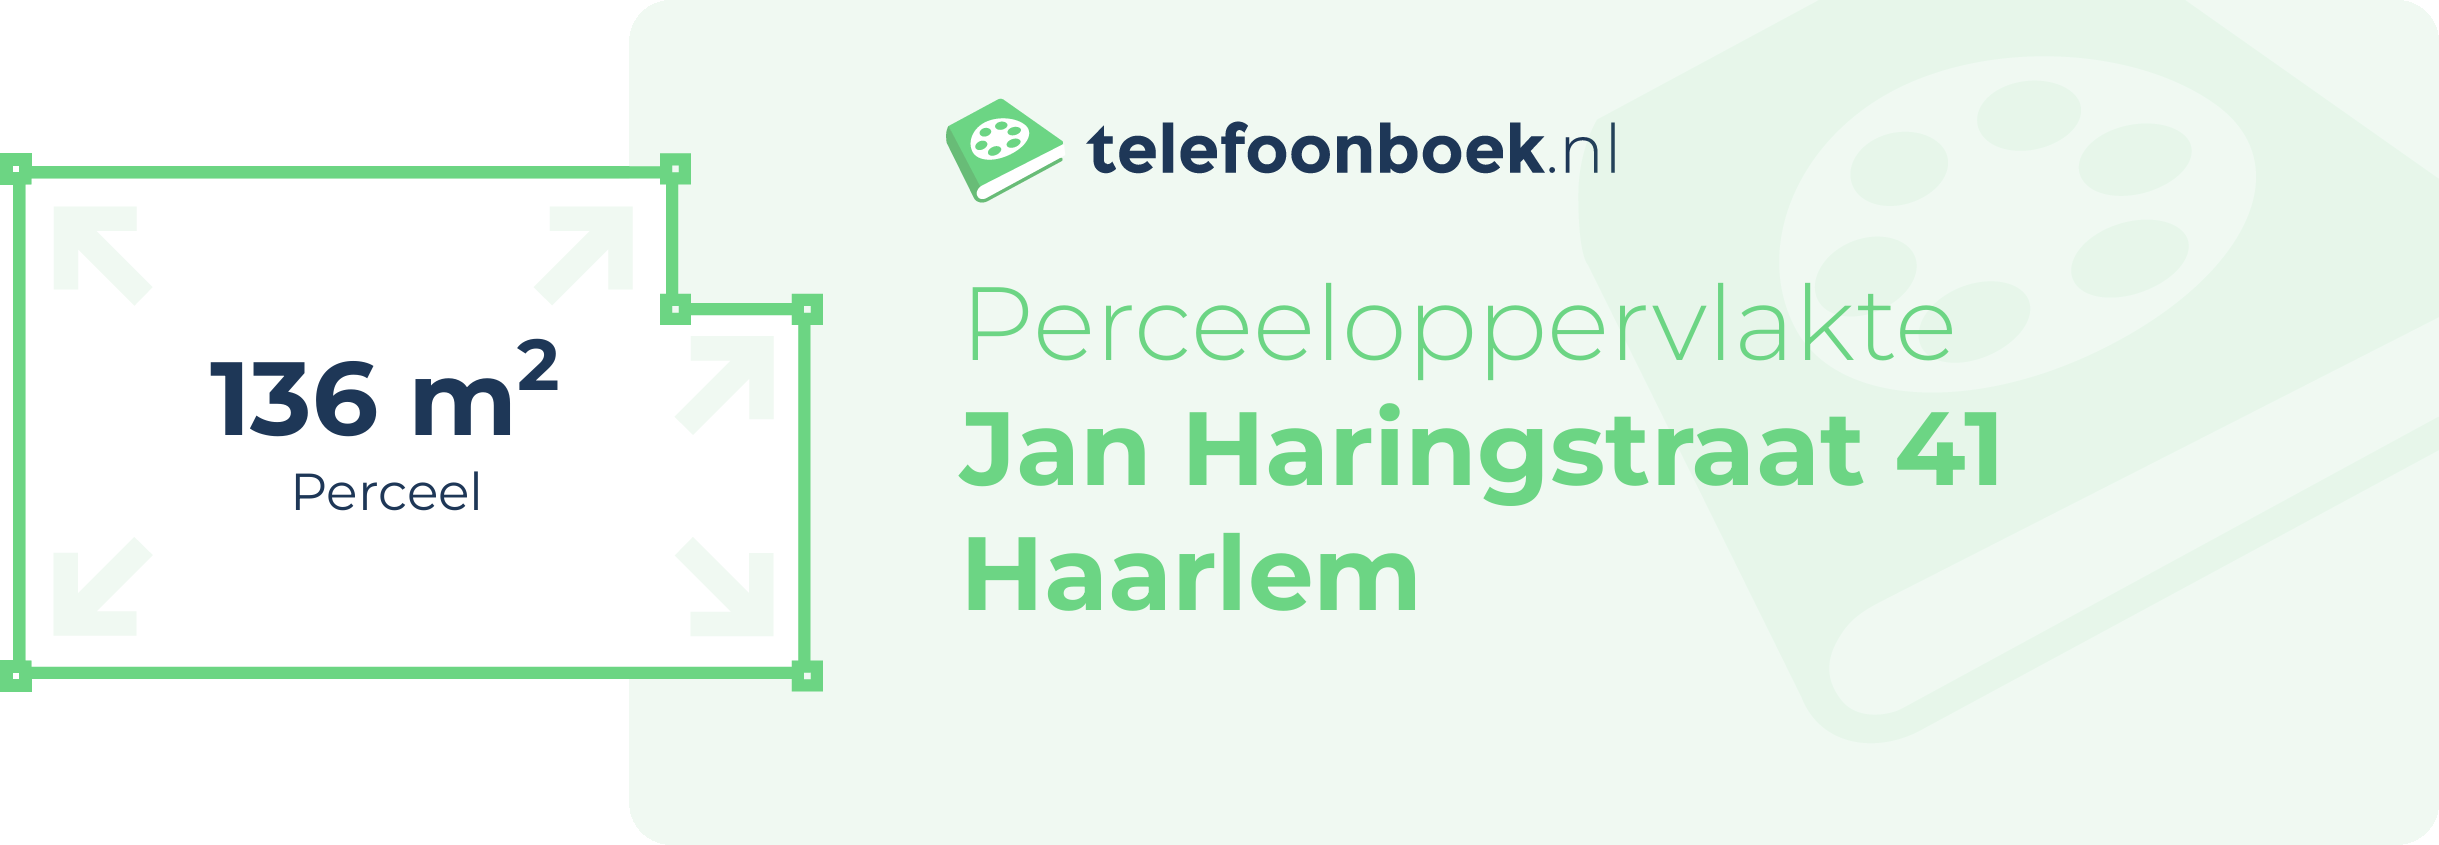 Perceeloppervlakte Jan Haringstraat 41 Haarlem